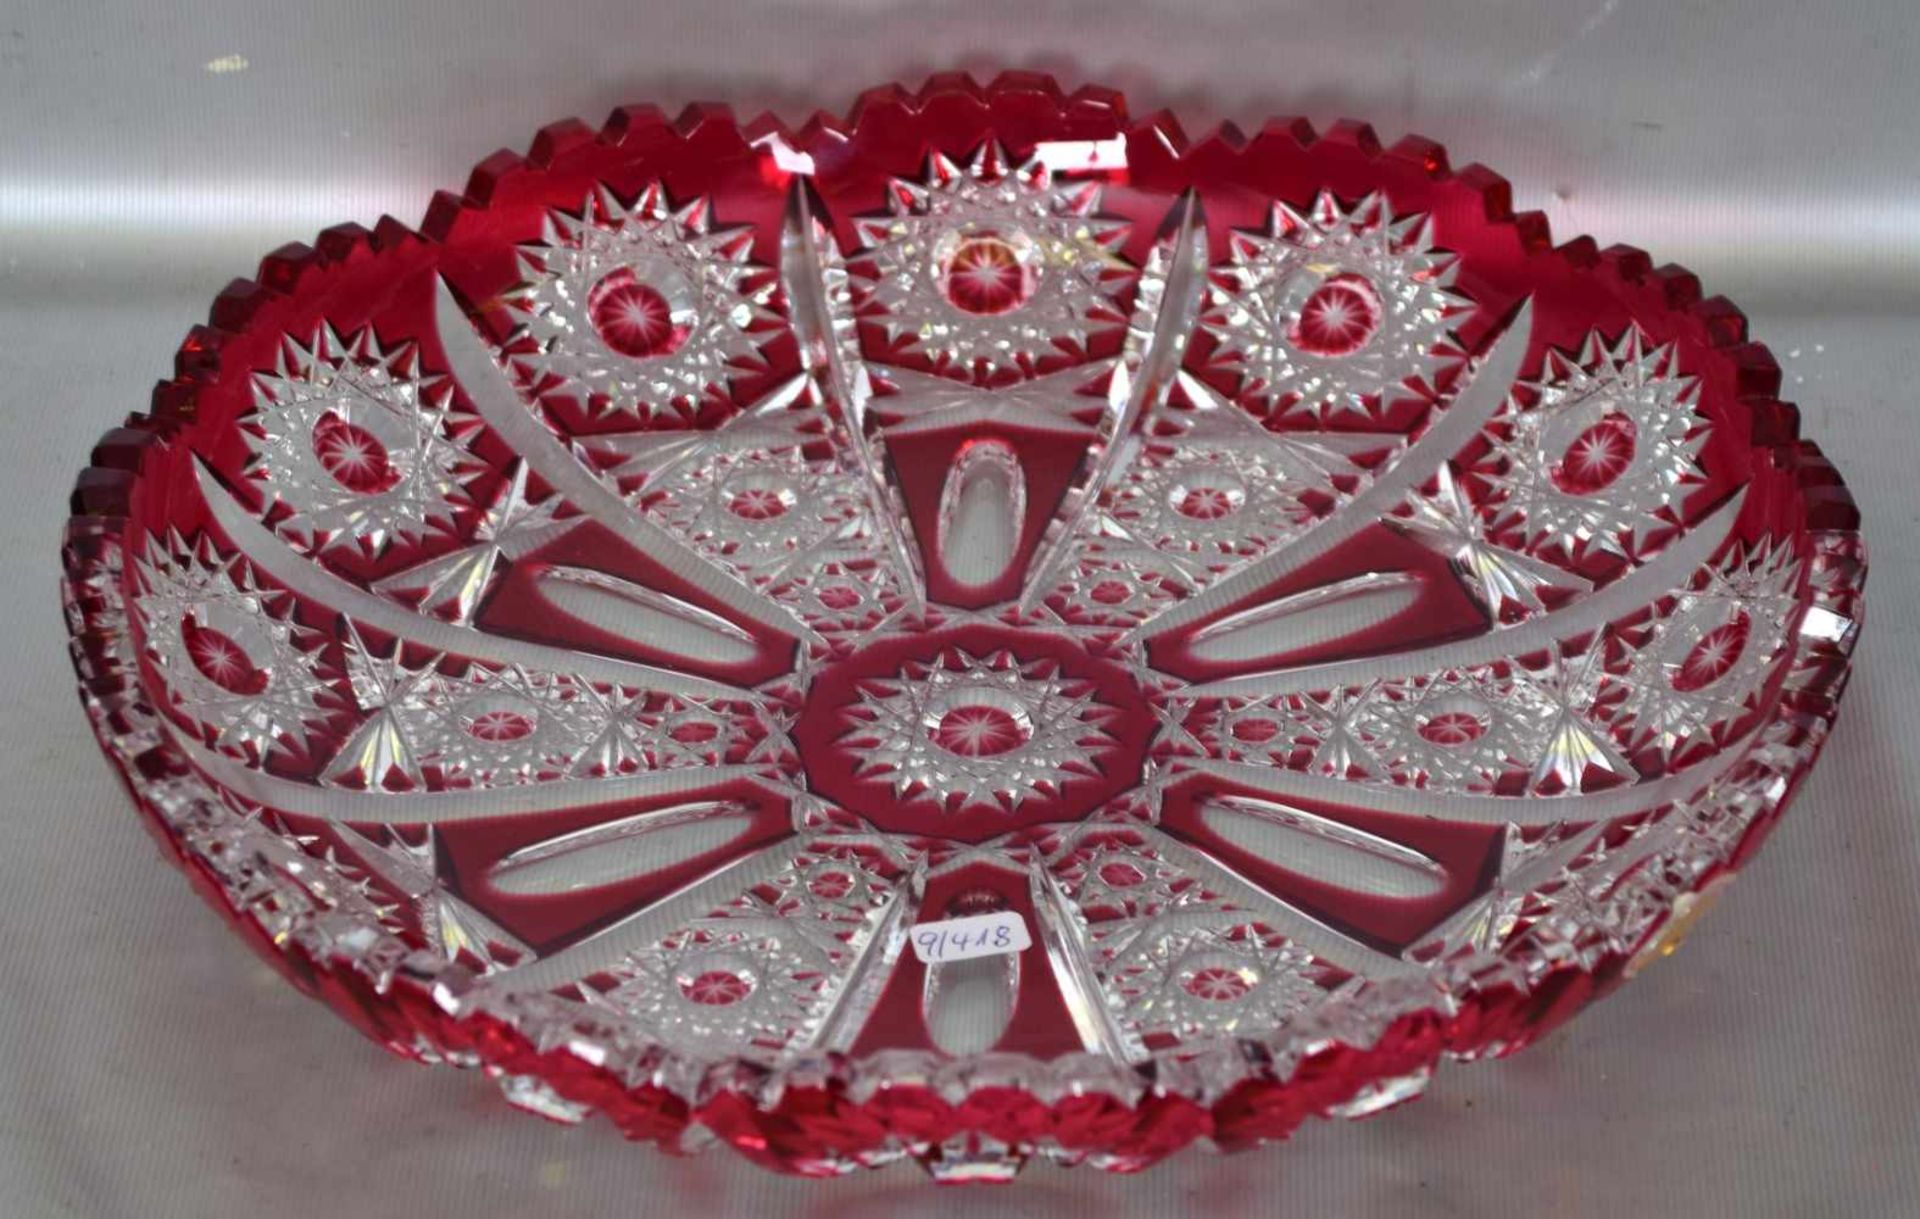 Gebäckplattefarbl. Glas, geschliffen verziert, mit rotem Überfang, gezackter Rand, Dm 28 cm